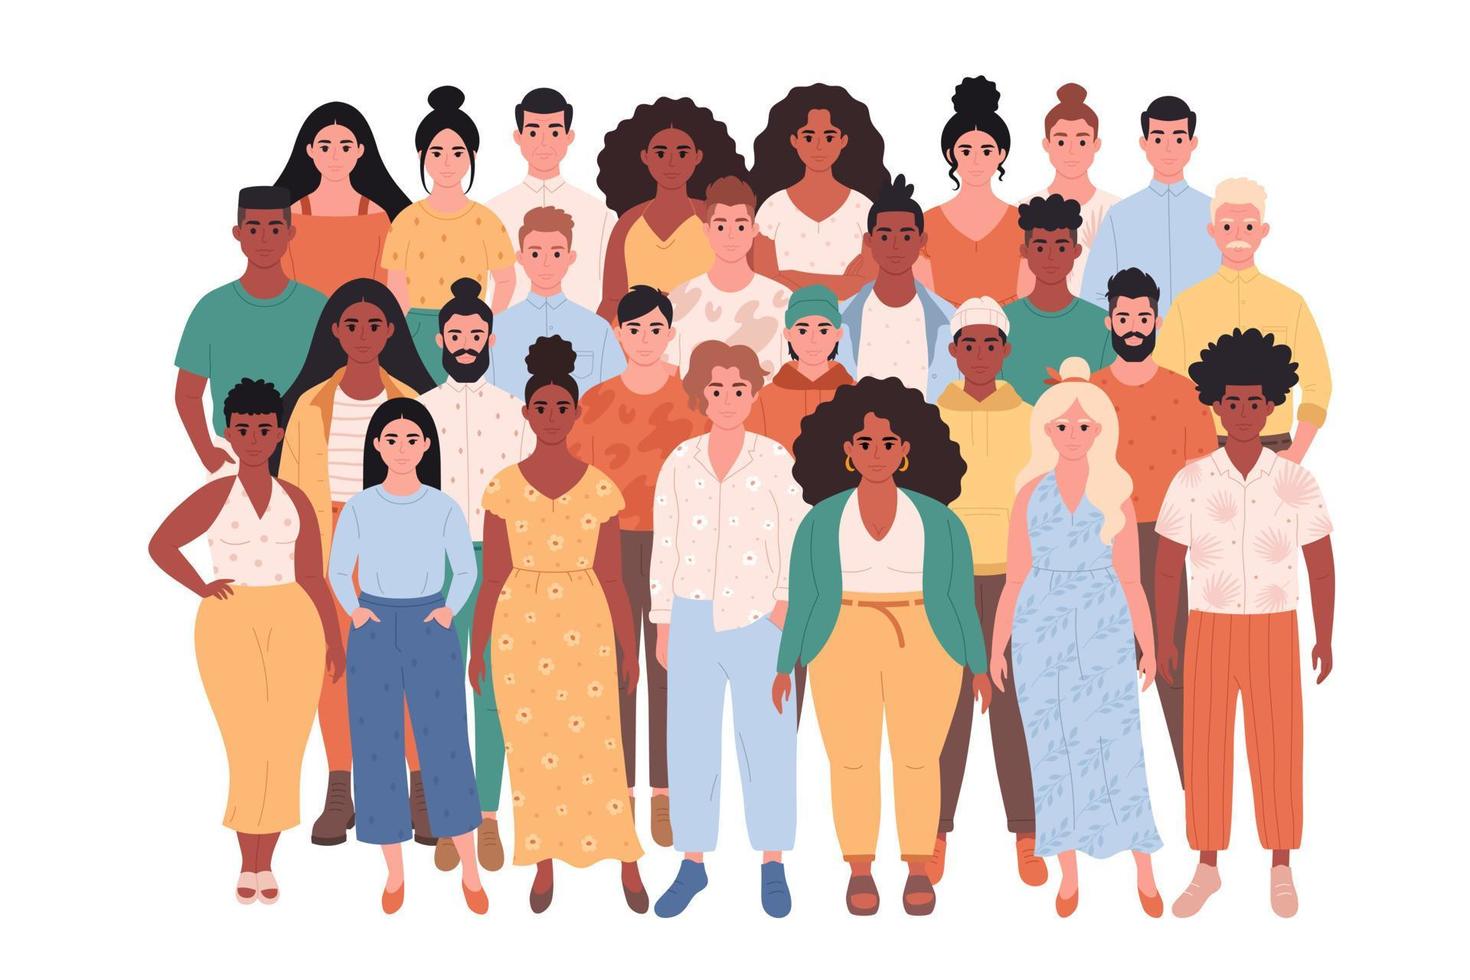 menigte van verschillende mensen van verschillende rassen, lichaamstypes. sociale diversiteit van mensen in de moderne samenleving. vector